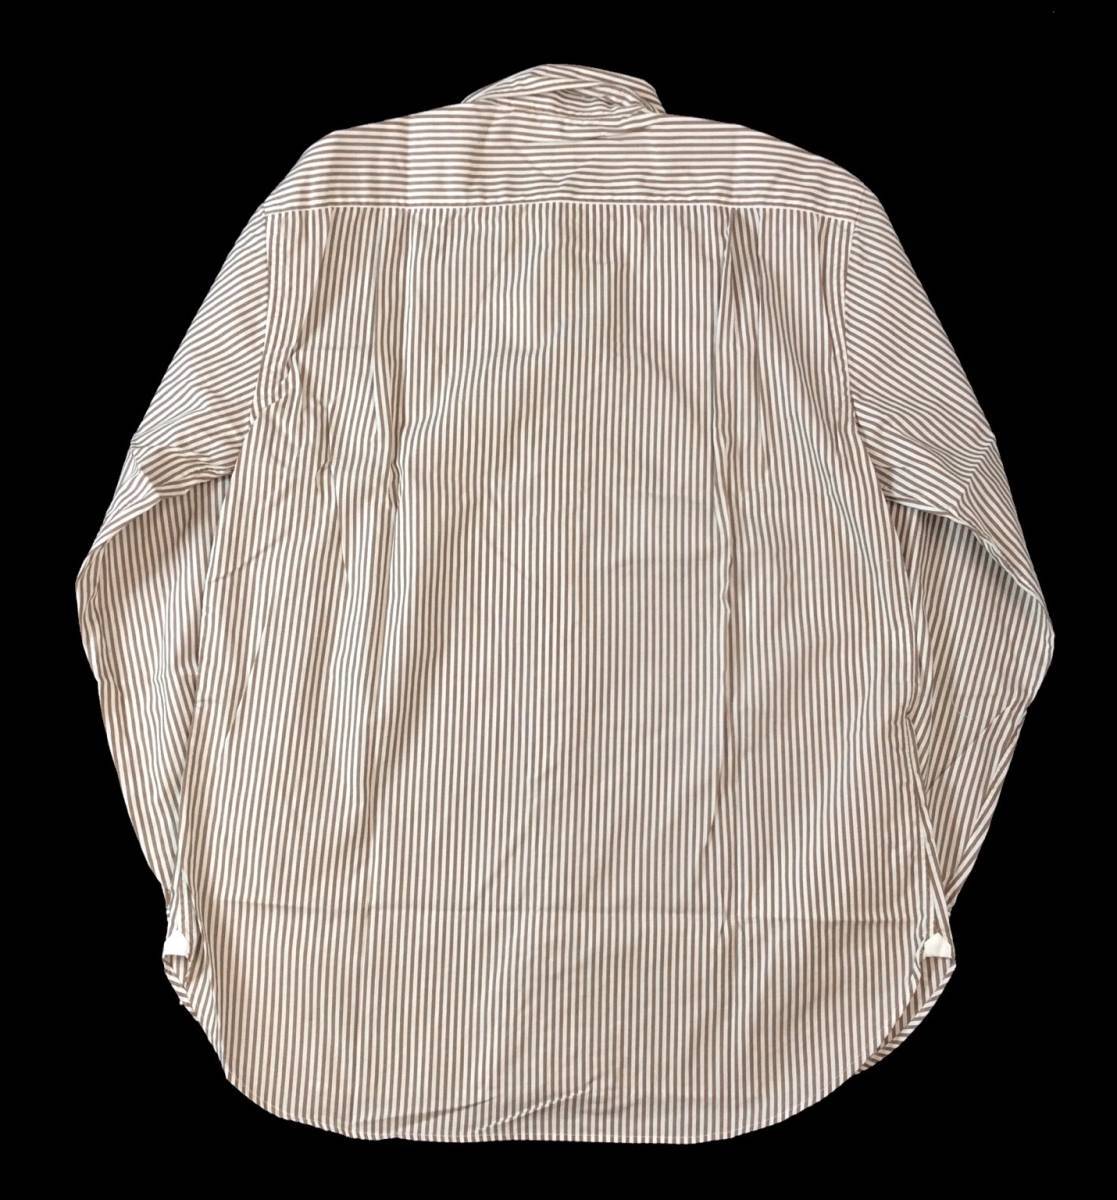 SAN SIRO イタリア製 ストライプ ドレスシャツ ブラウン×ホワイト メンズ 161/2-42 送料250円_画像5